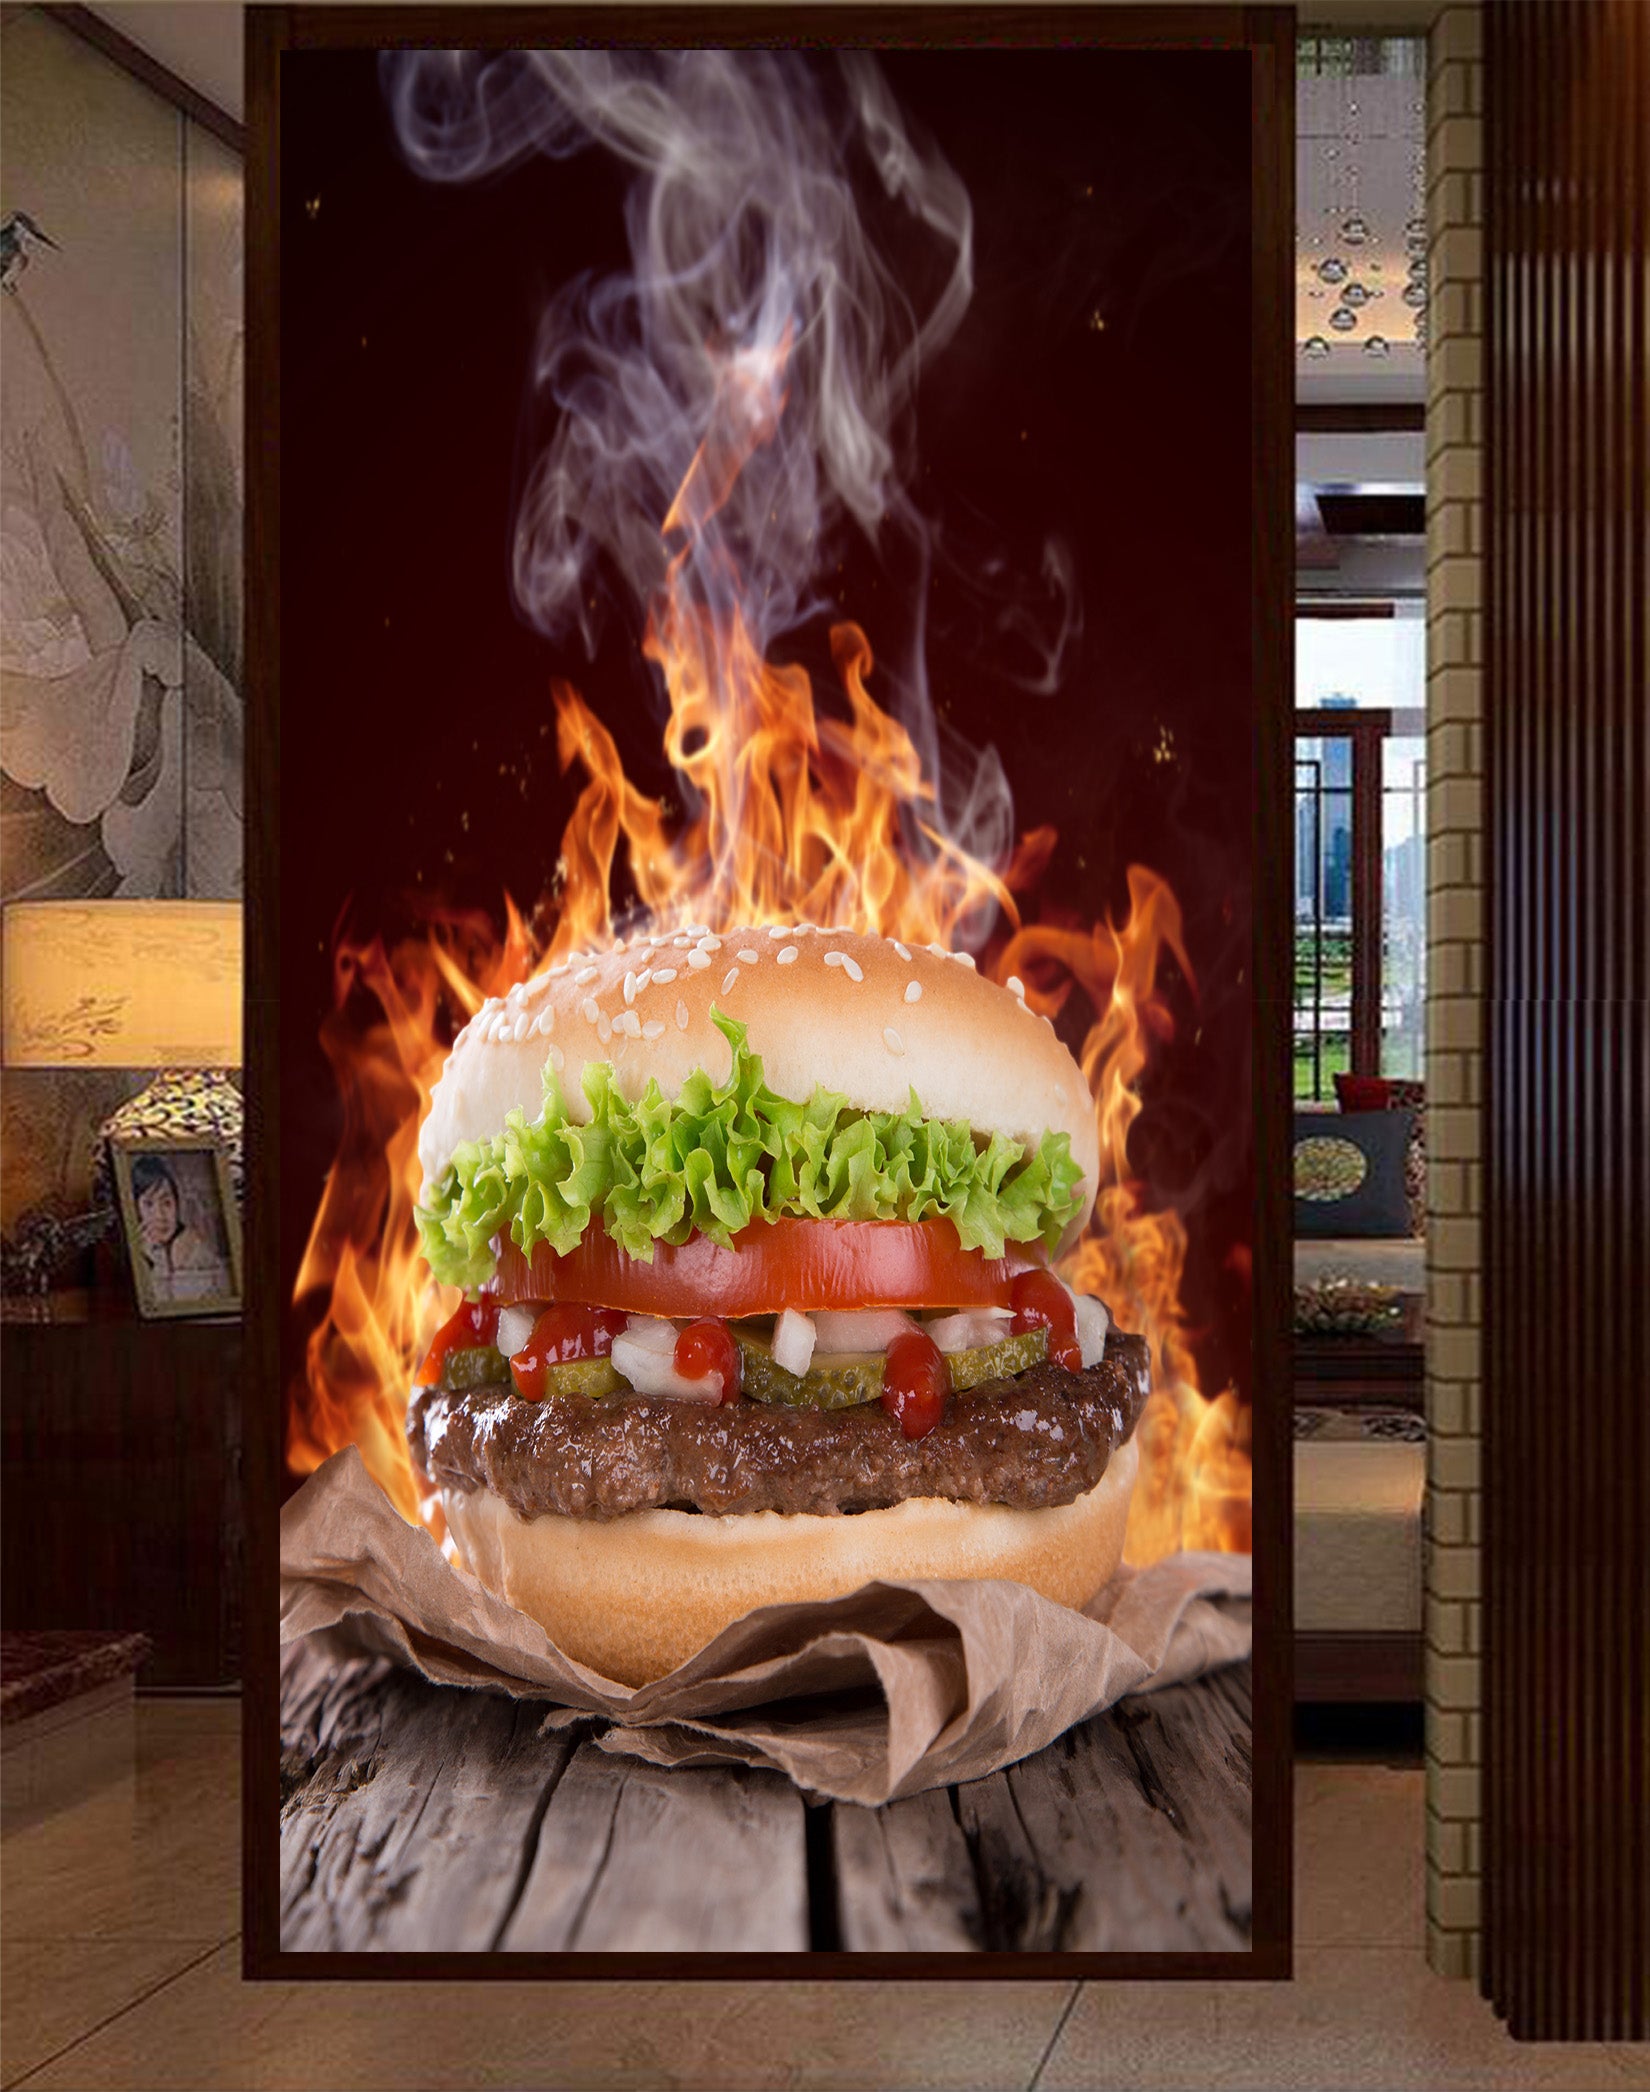 3D Delicious Burger 030 Food Wall Murals Wallpaper AJ Wallpaper 2 